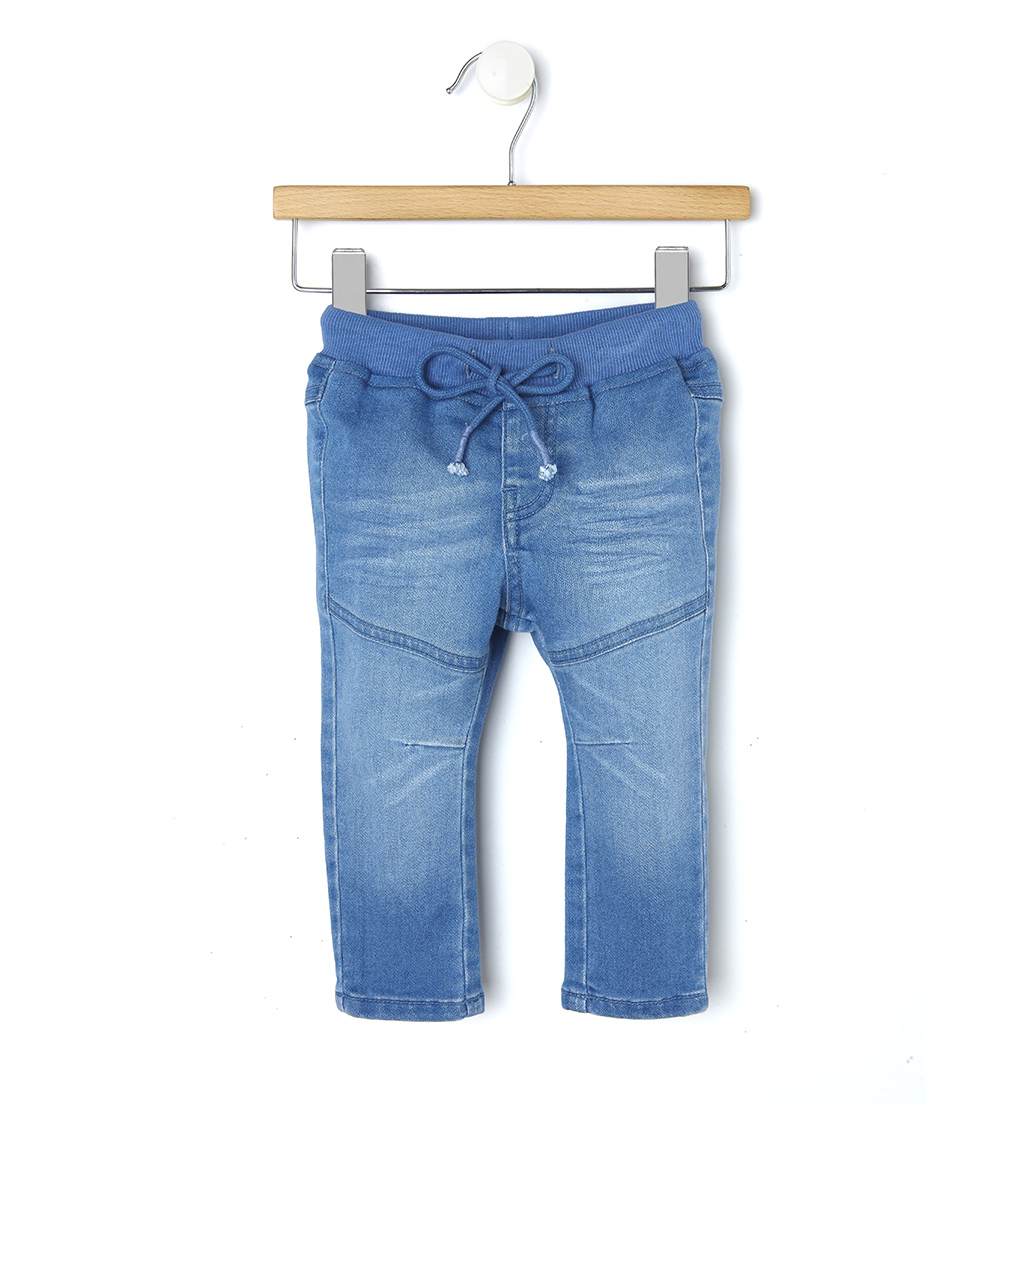 βρεφικό τζιν παντελόνι ανοιχτό μπλε για αγόρι